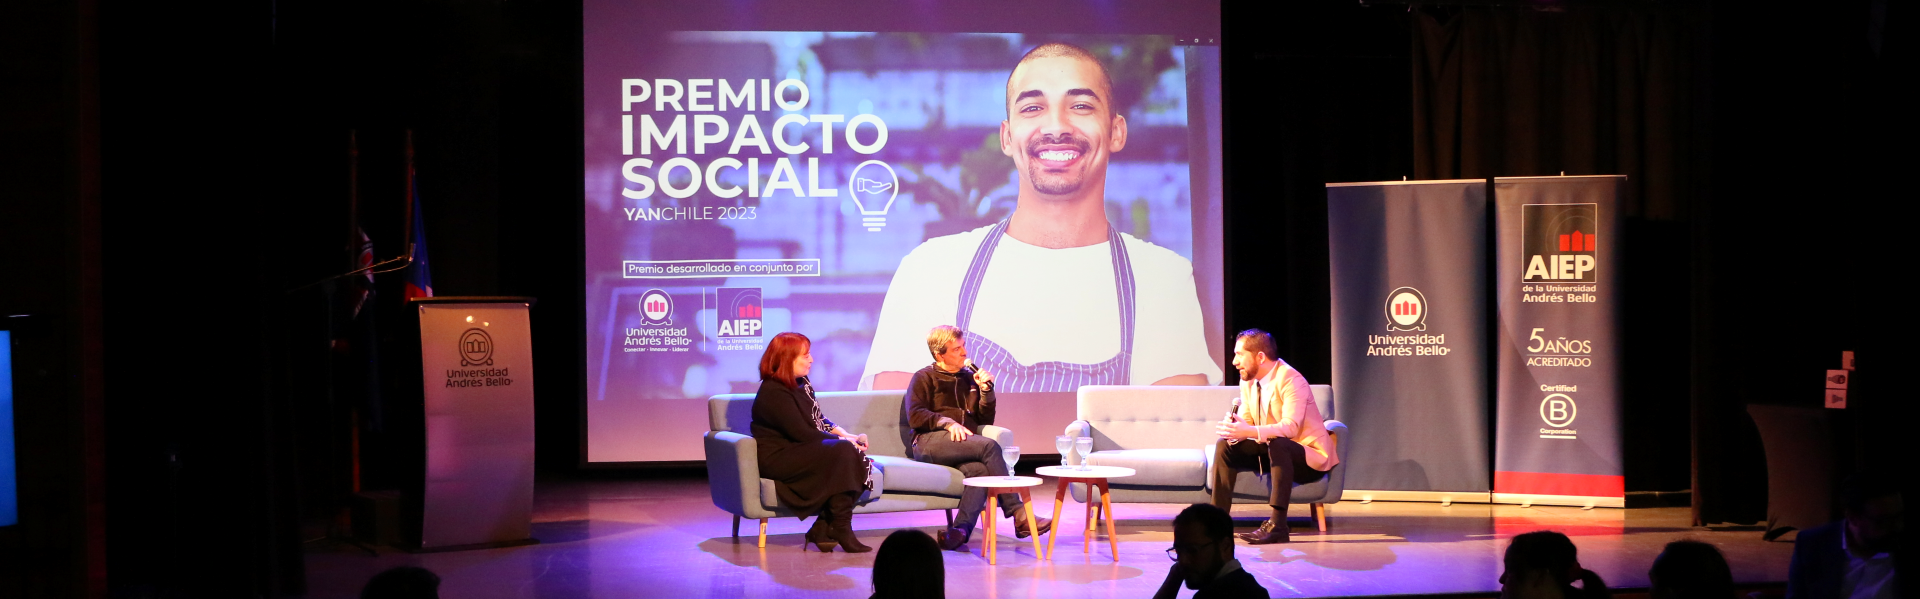 YANChile crece, lanza convocatoria para emprendedores sociales 2023 y ahora se llama Premio Impacto Social